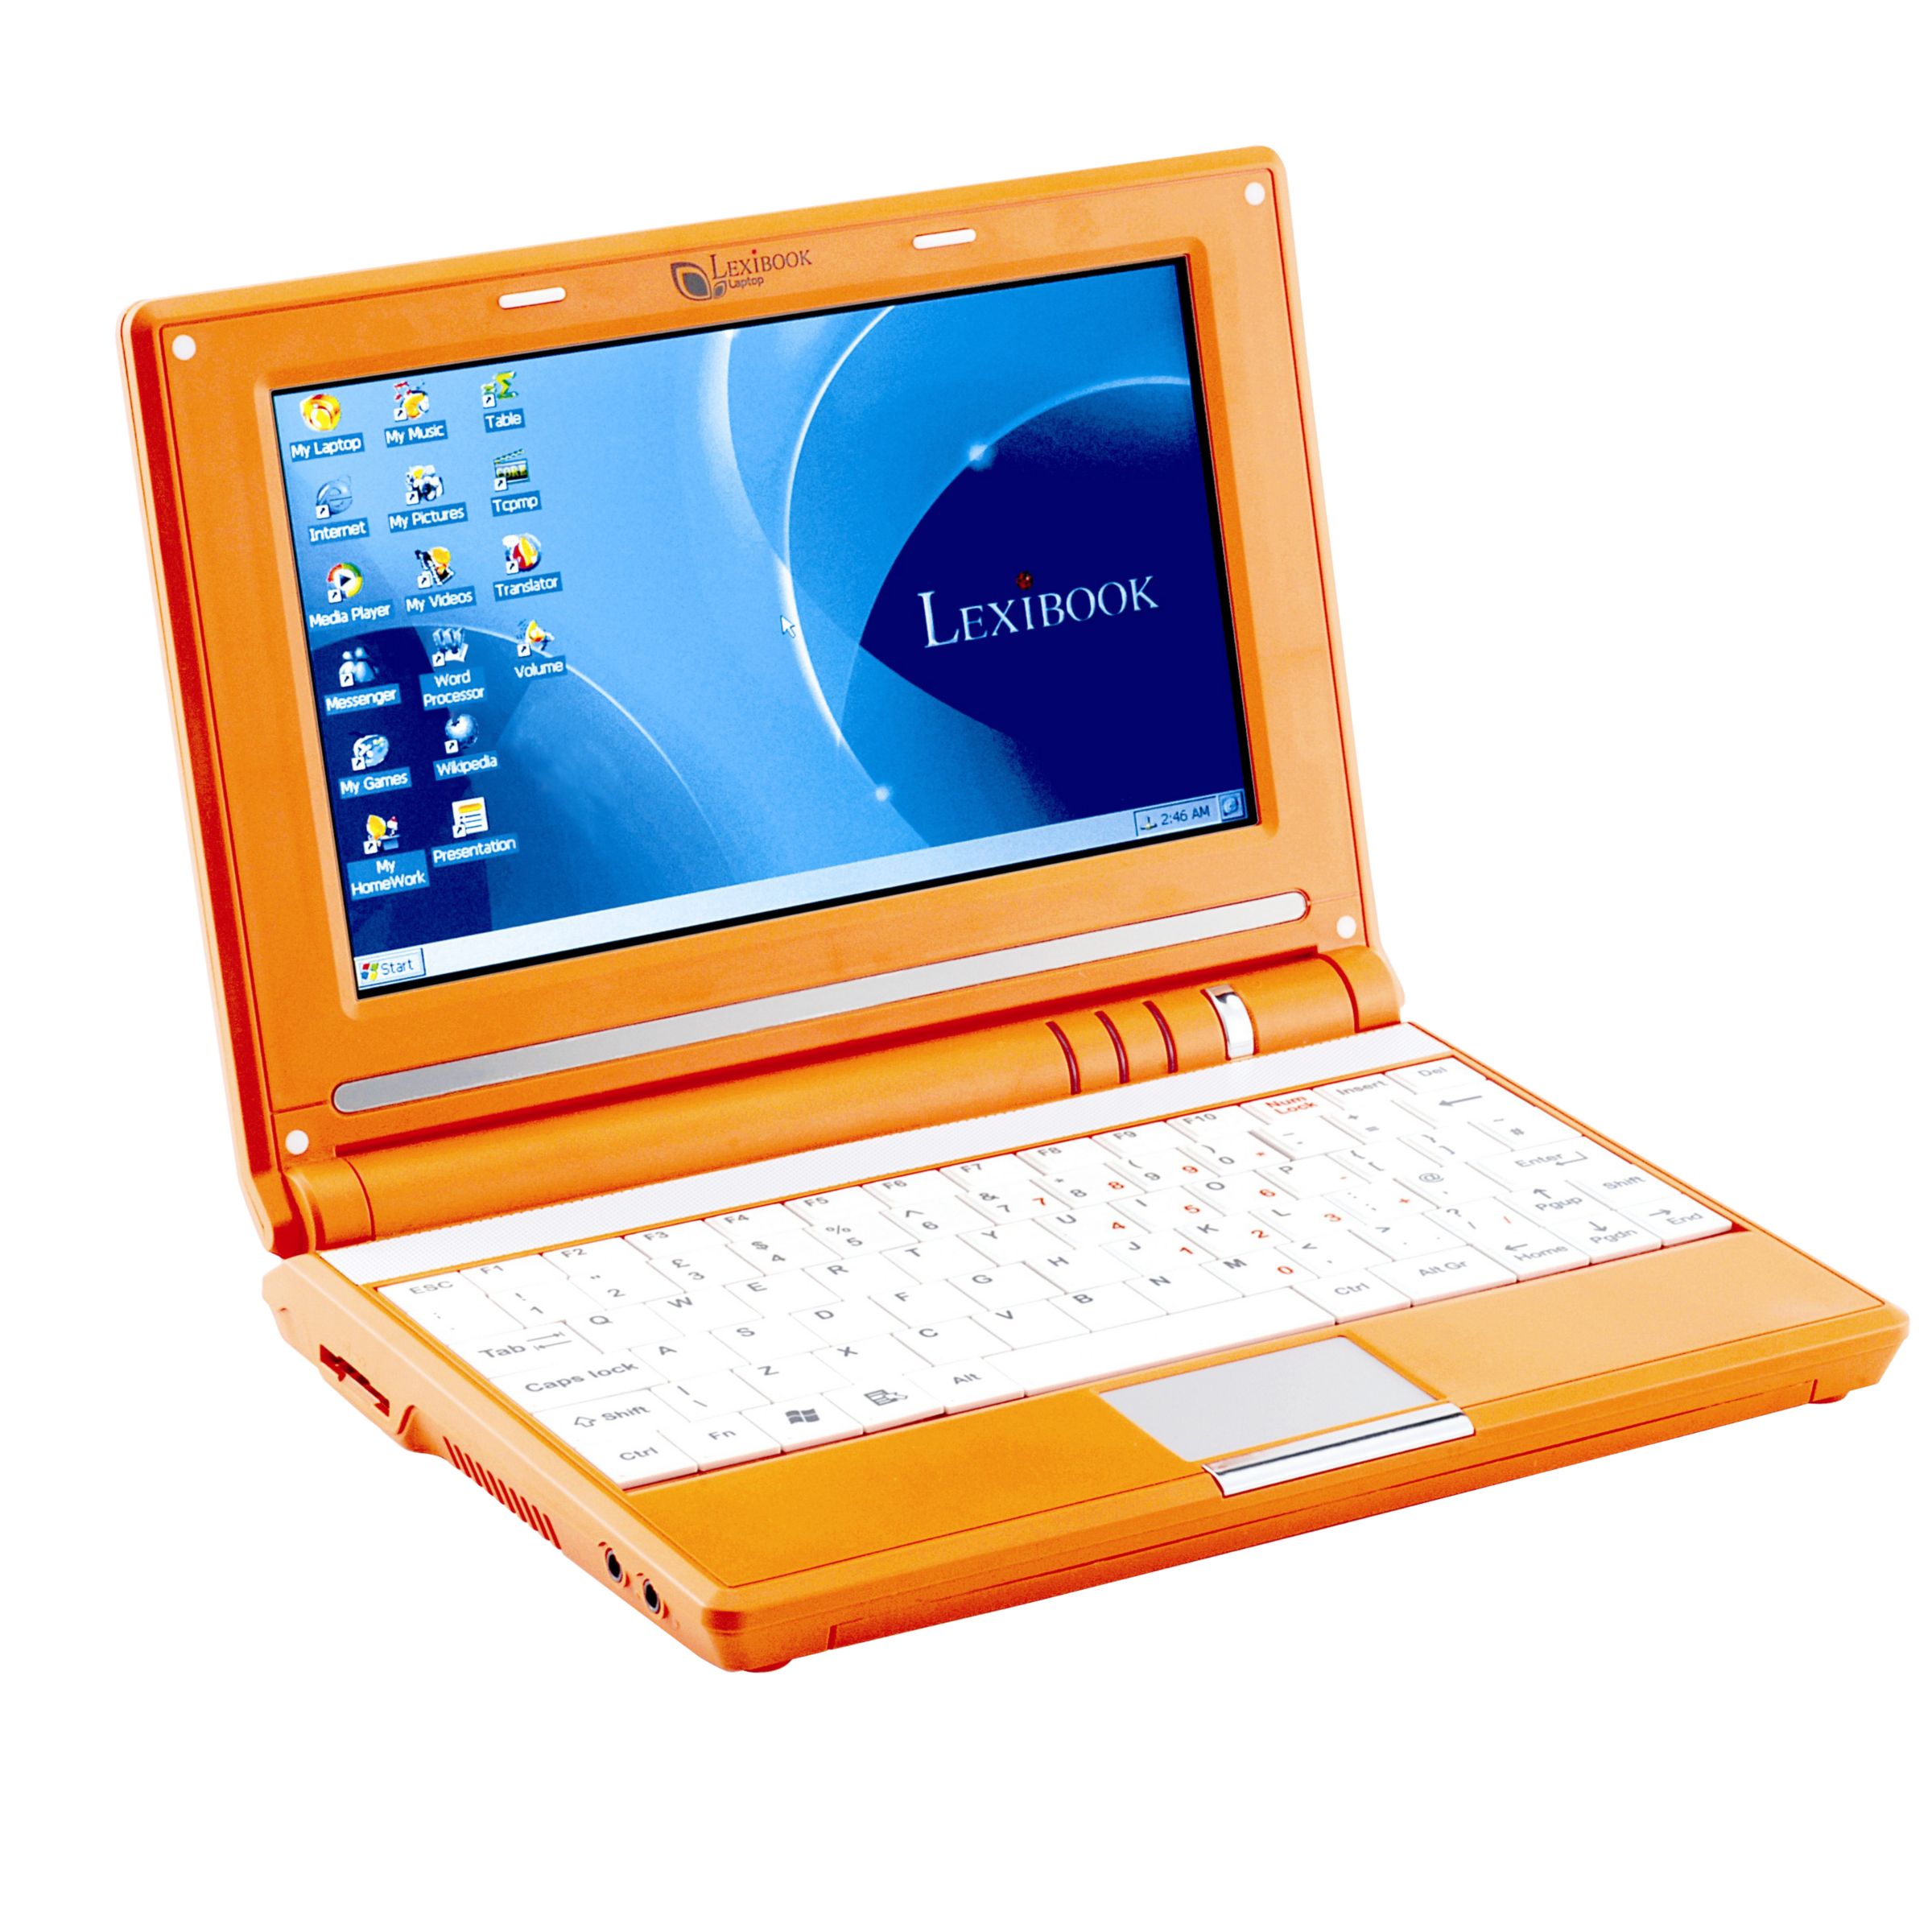 Lexibook My First Laptop, Orange at JohnLewis